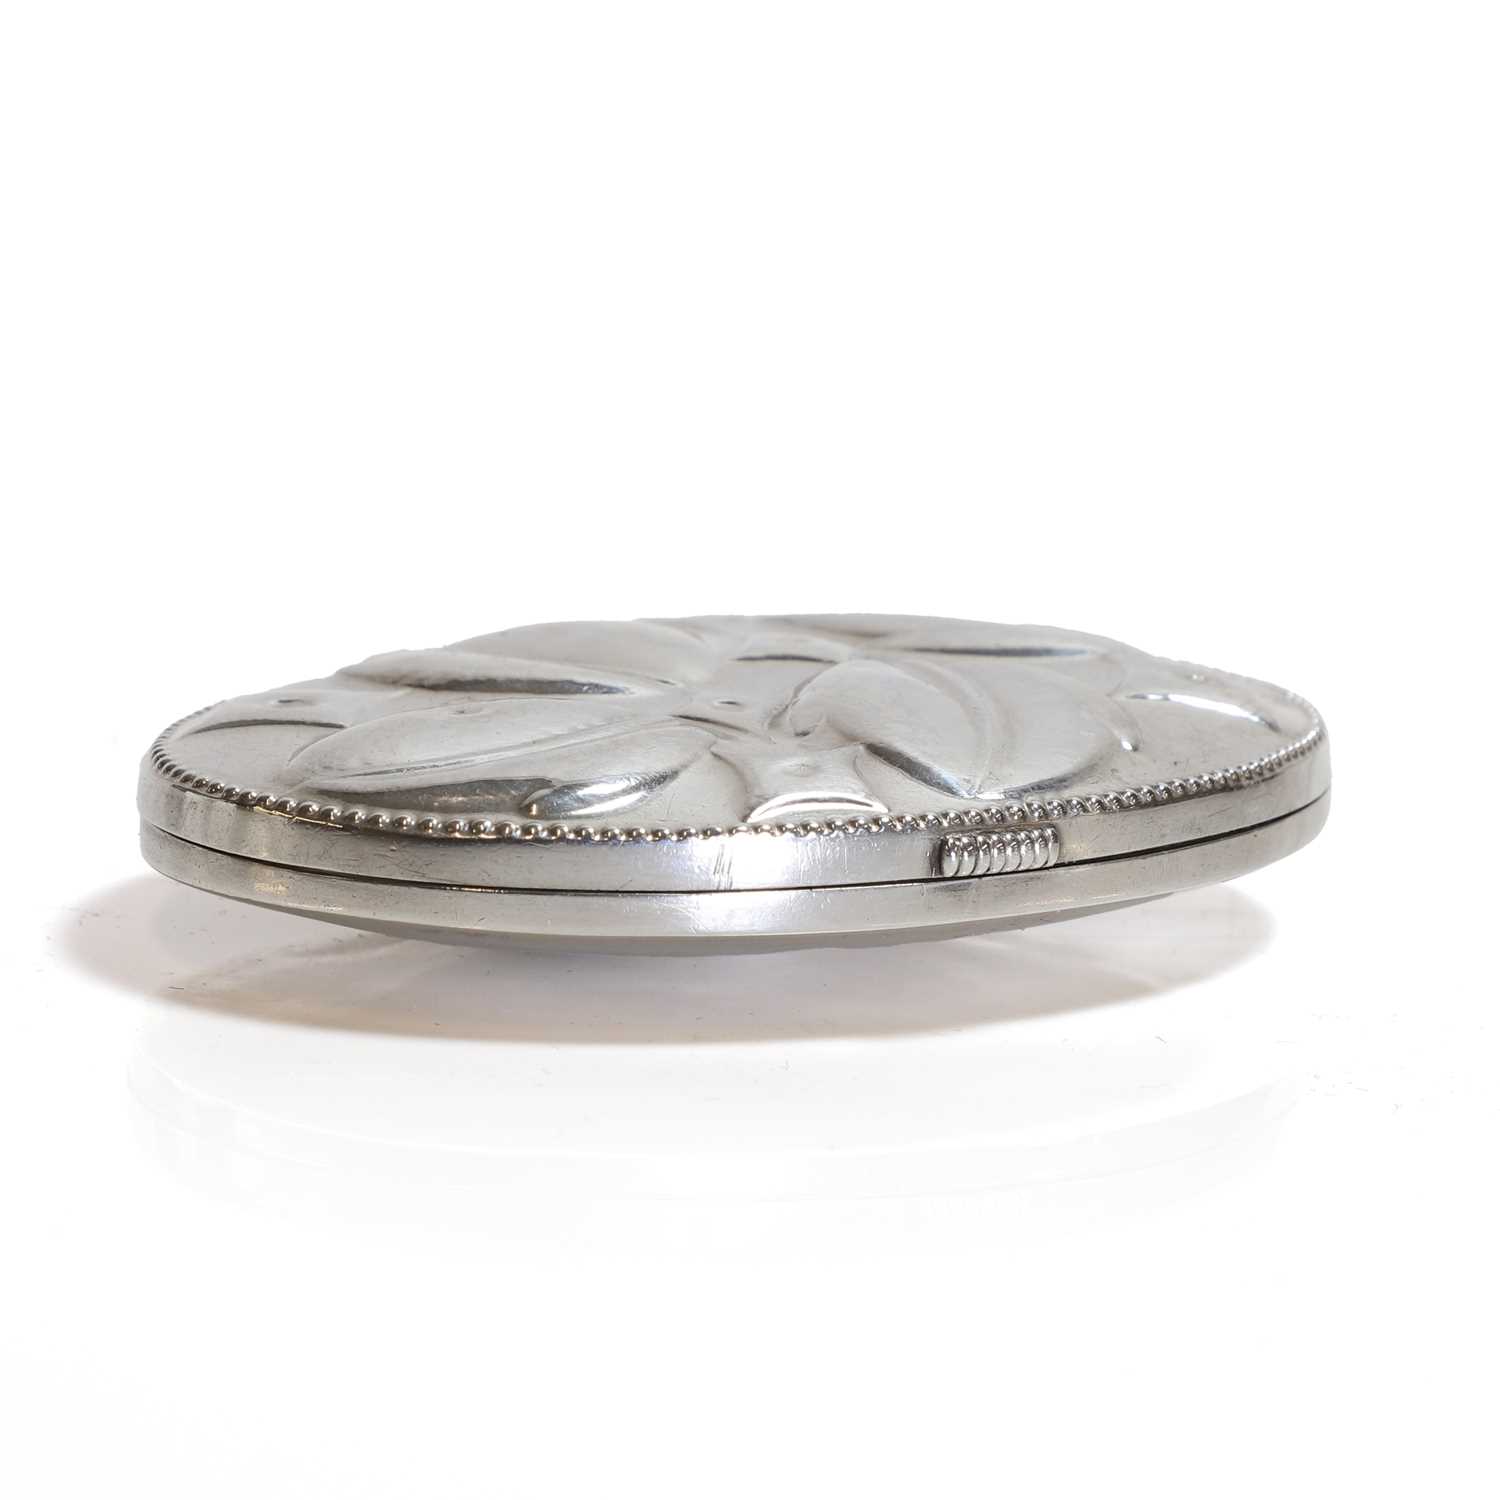 An Austrian silver bonbonnière, - Image 3 of 9